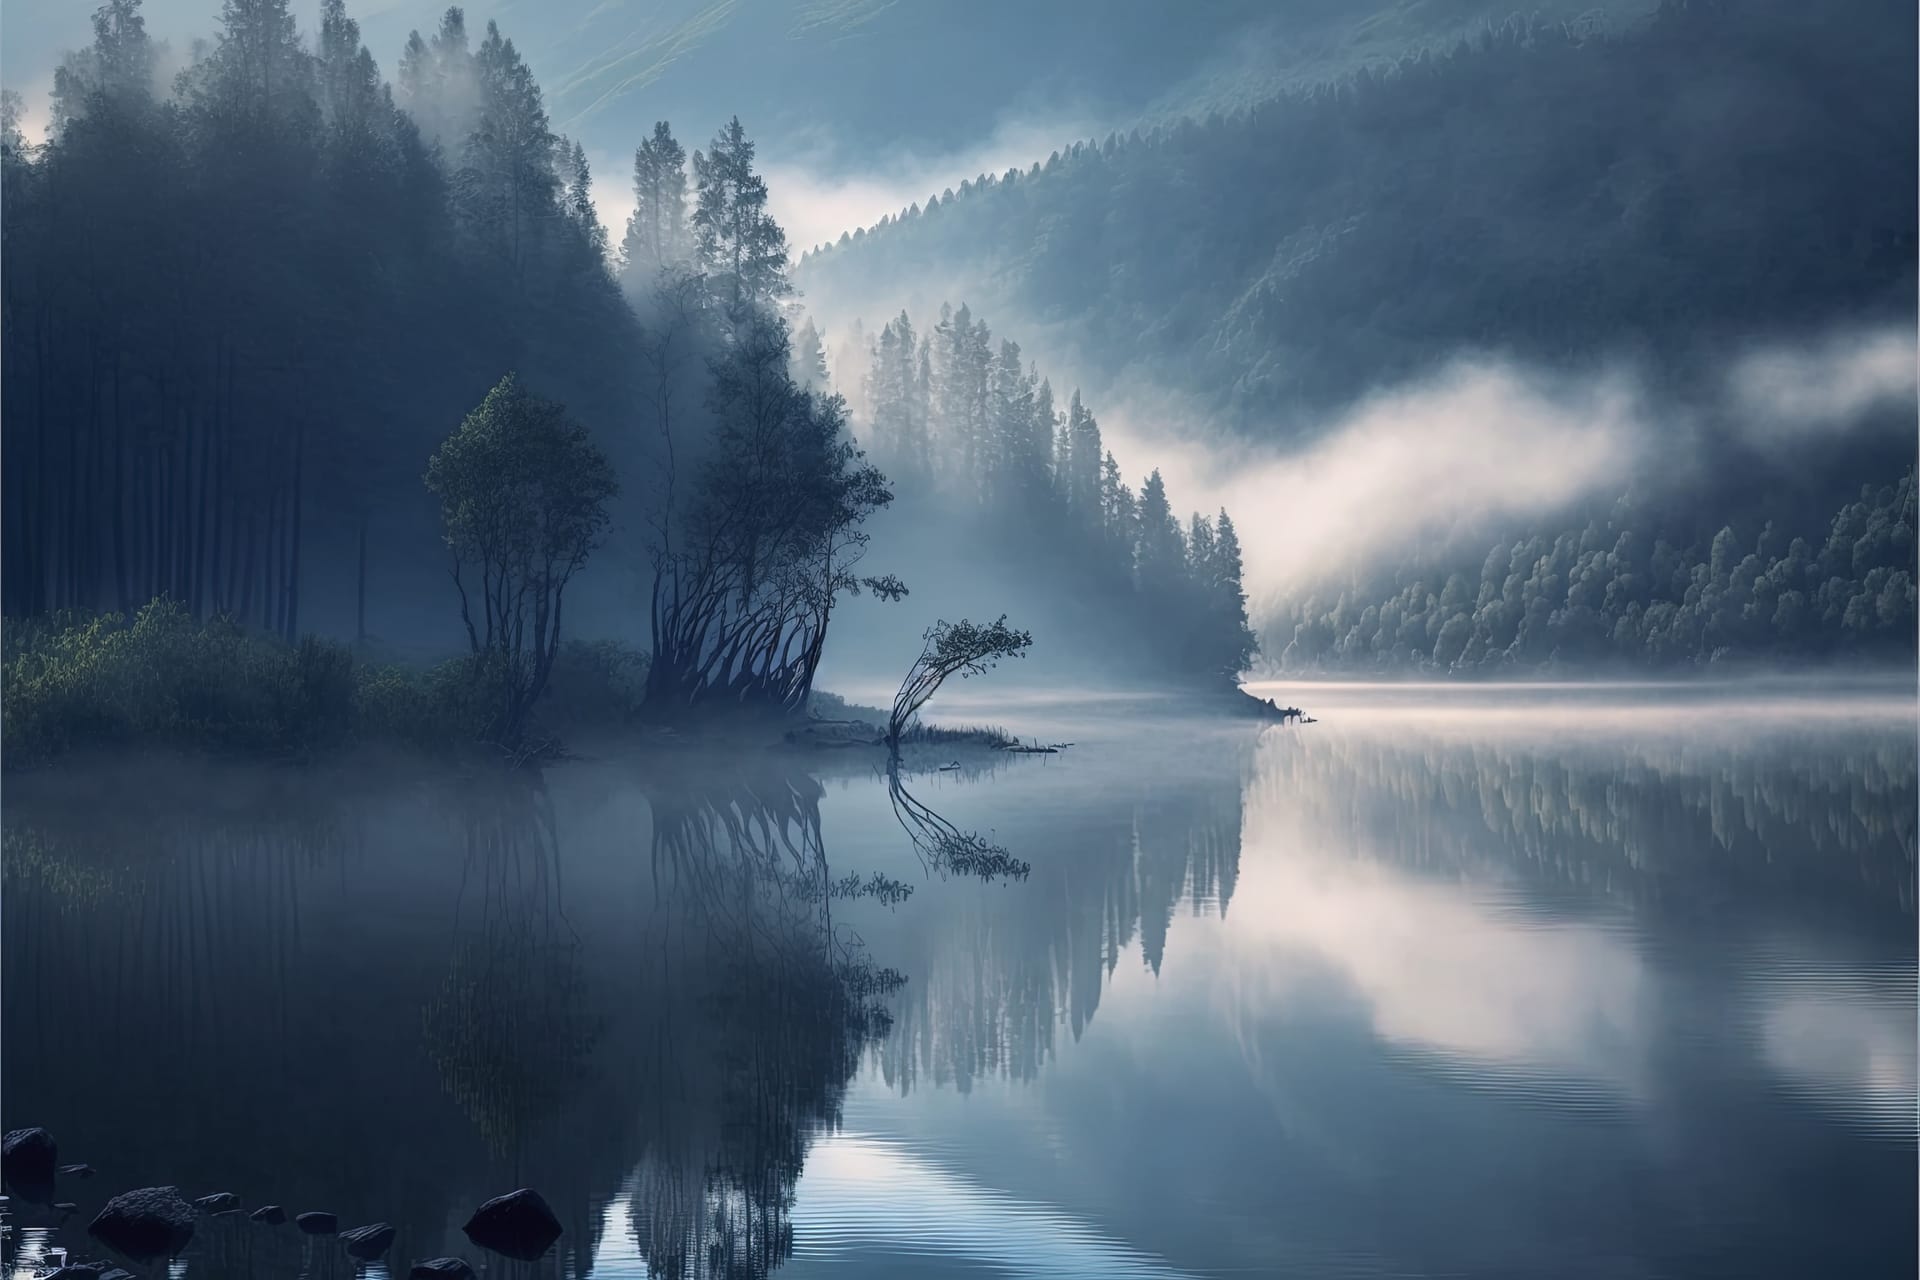 Misty morning mountain lake woods serene scene